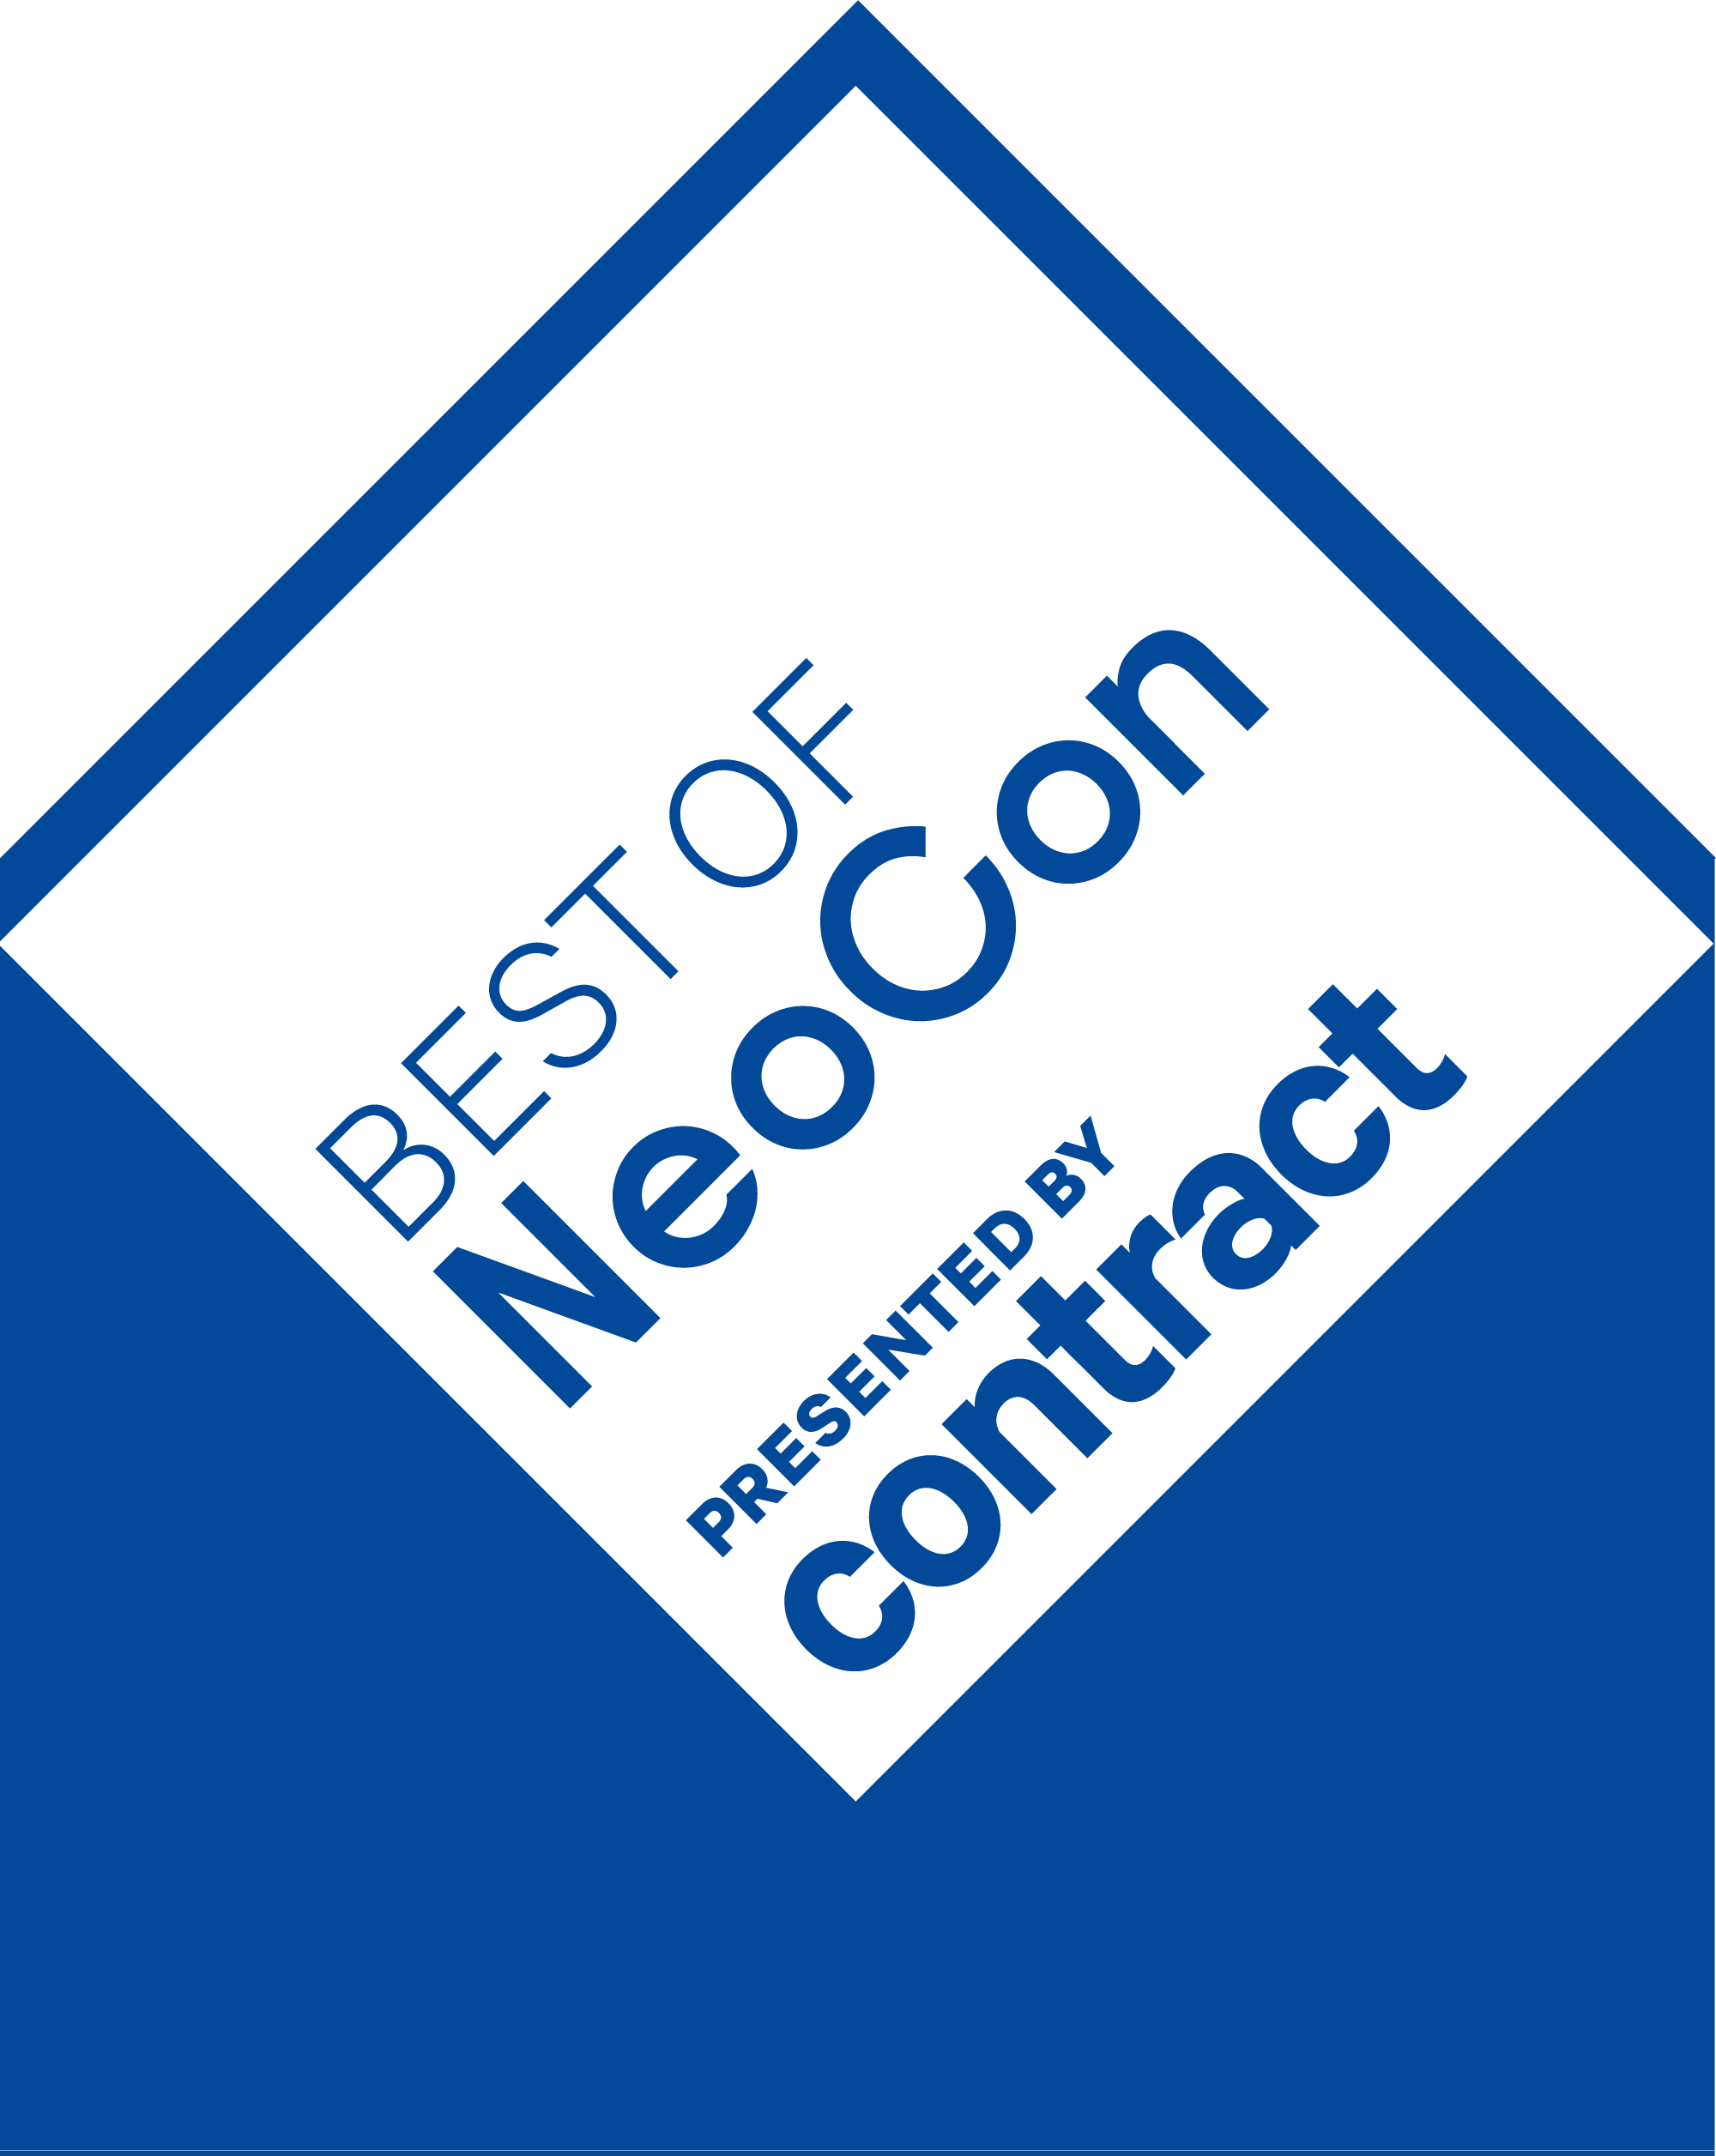 Best of NeoCon 2019 award logo